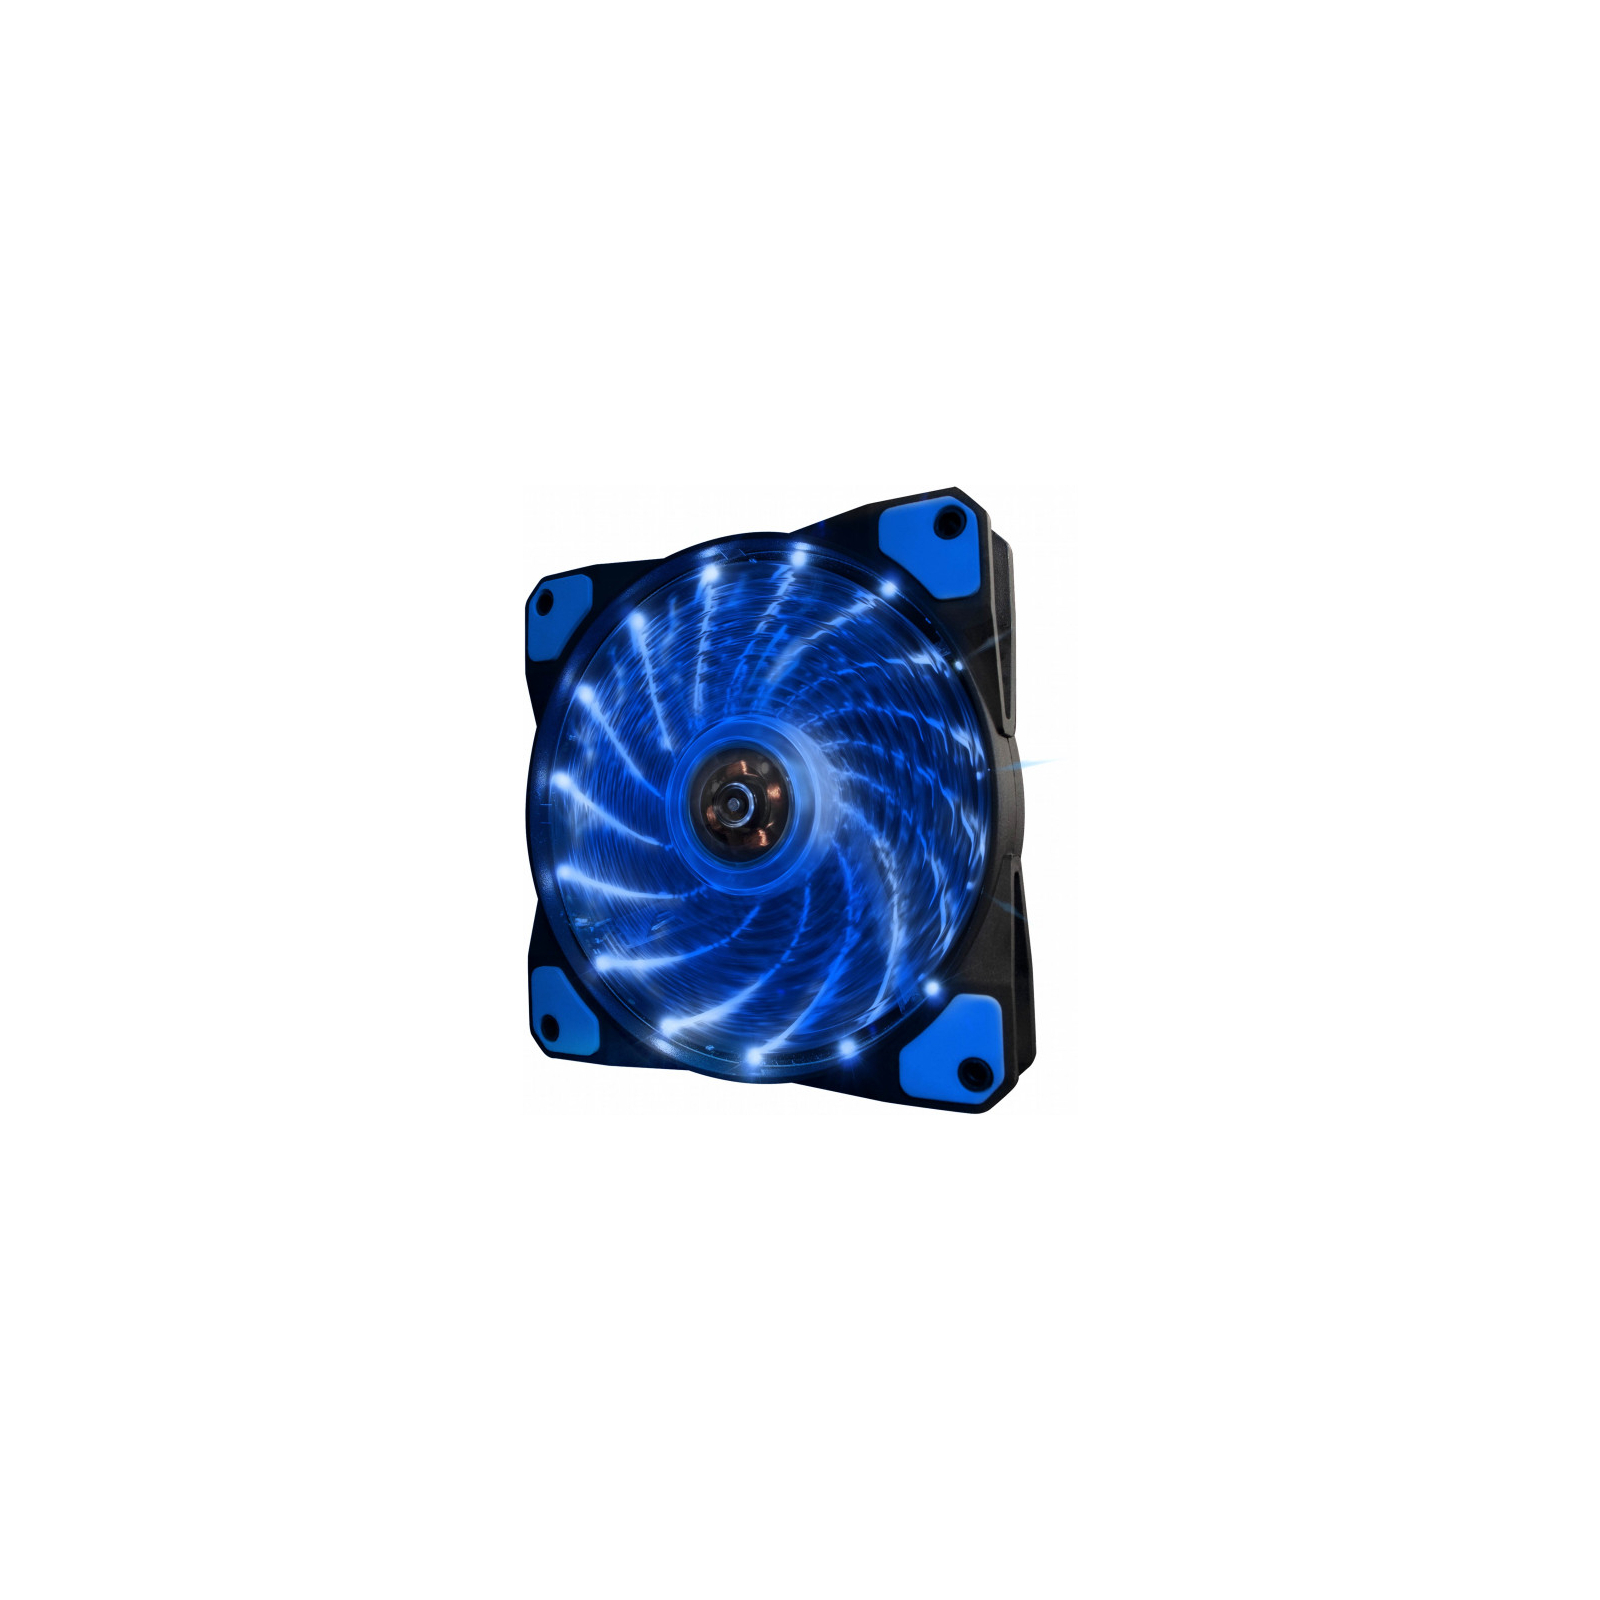 Кулер для корпуса Frime Iris LED Fan 15LED Blue (FLF-HB120B15)